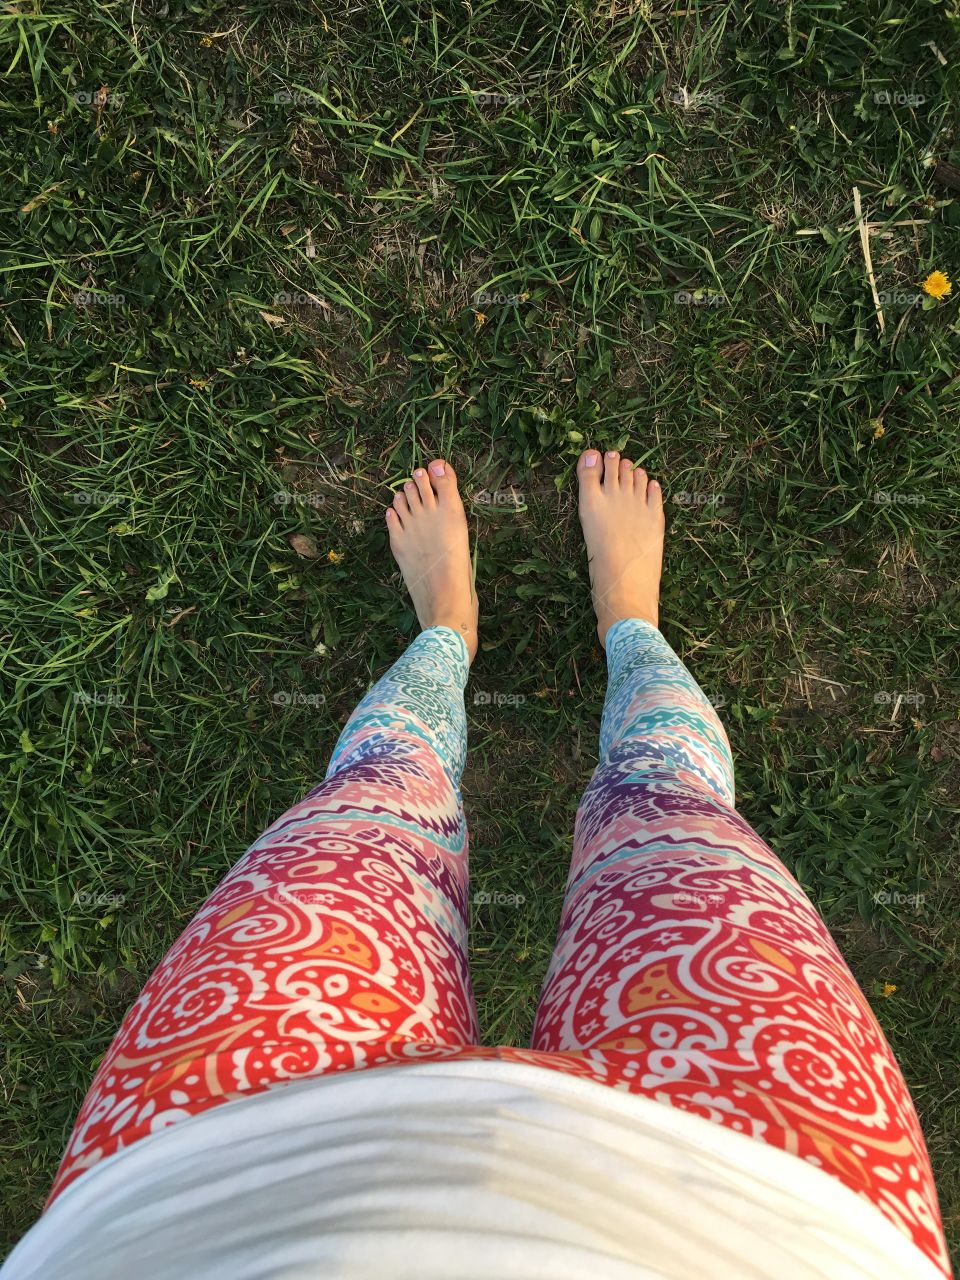 Grounding, barefoot, yoga.